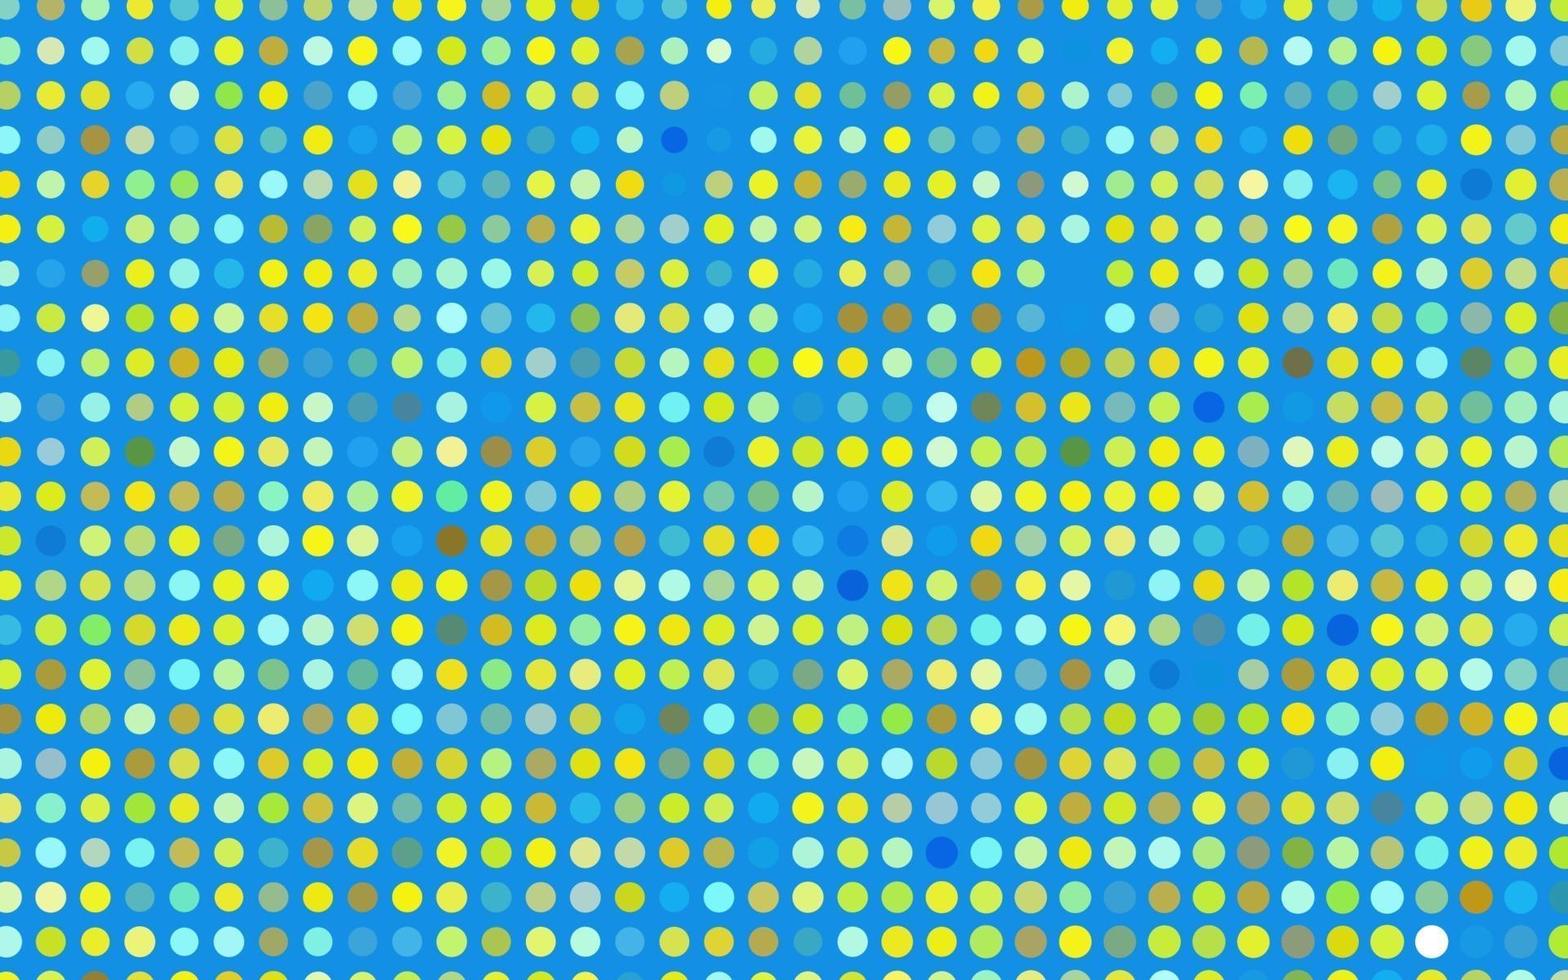 ljusblått, gult vektormönster med sfärer. vektor